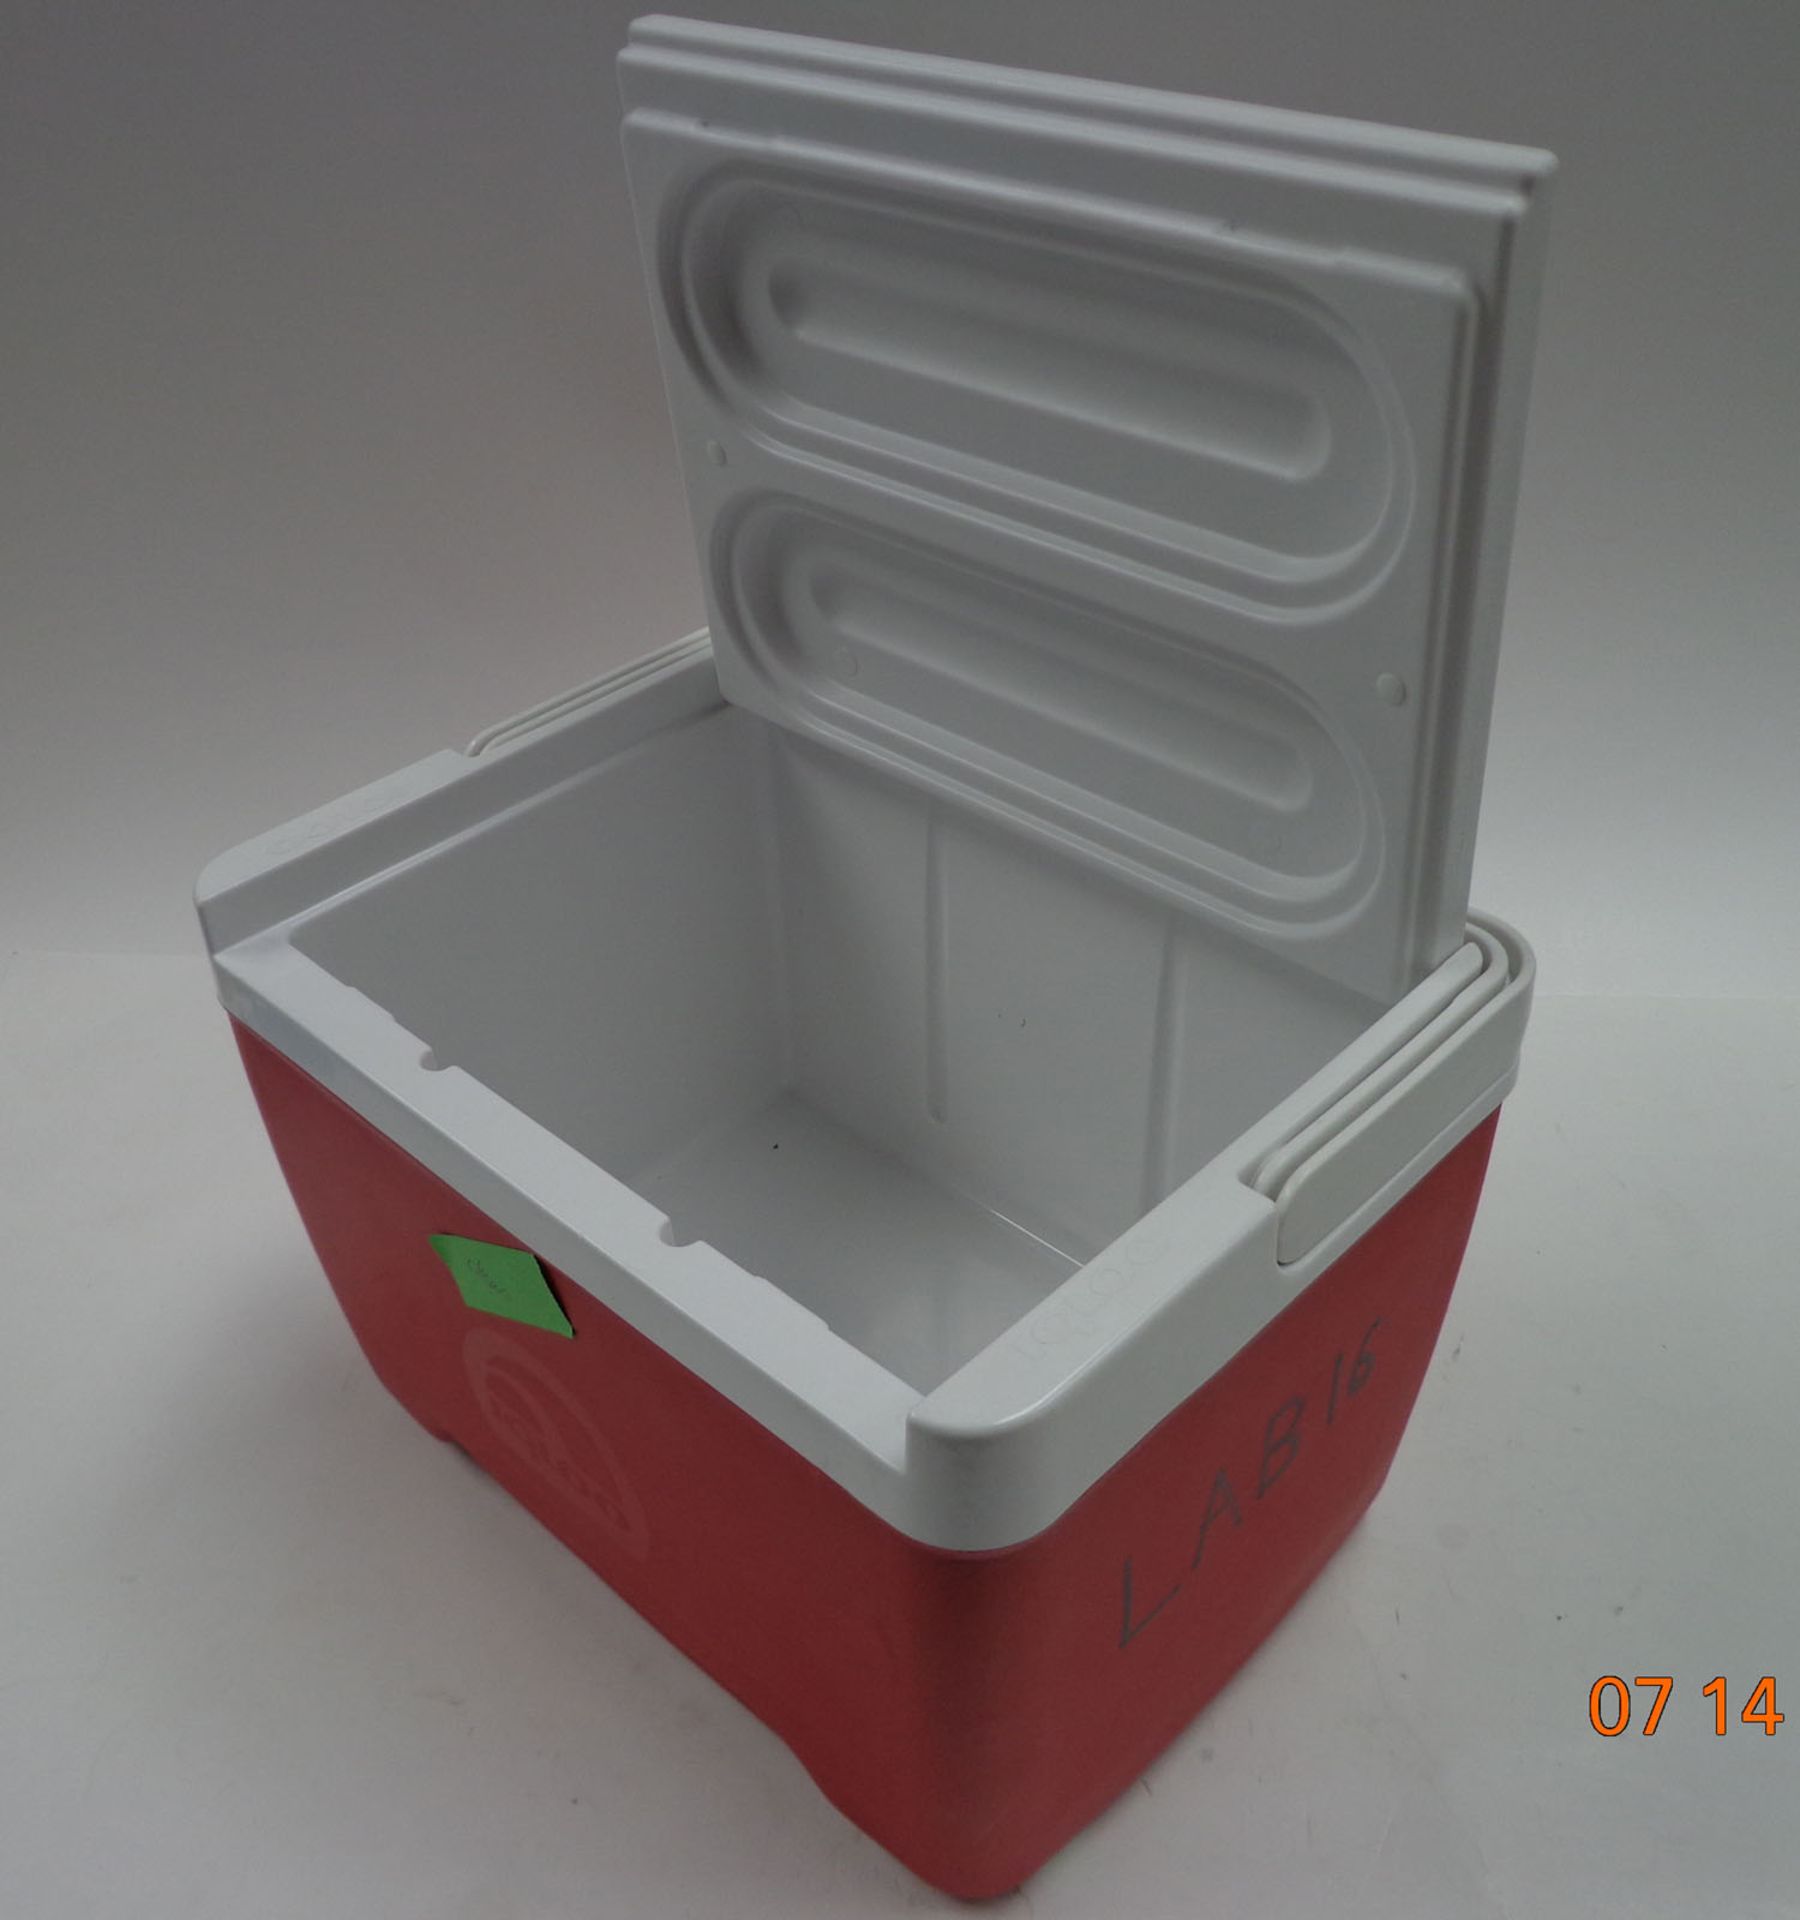 Igloo cool box (Ref: WA11025)